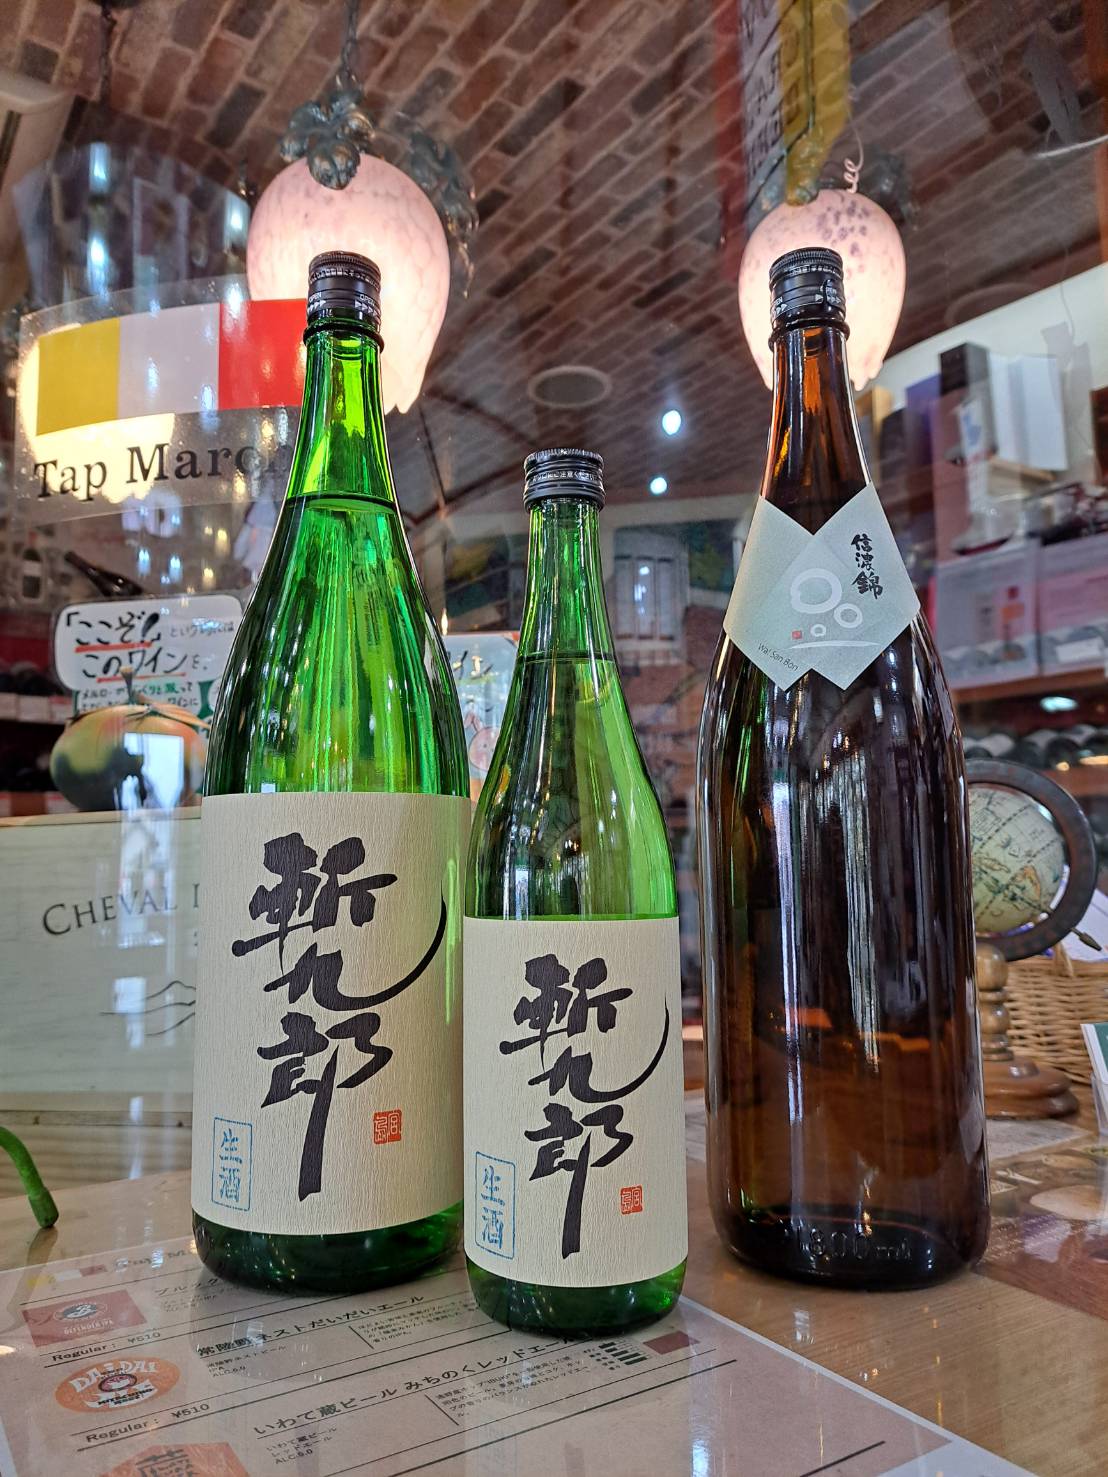 『長野県の信濃錦さんから、斬九郎61の新酒と和三本91が入荷しました』